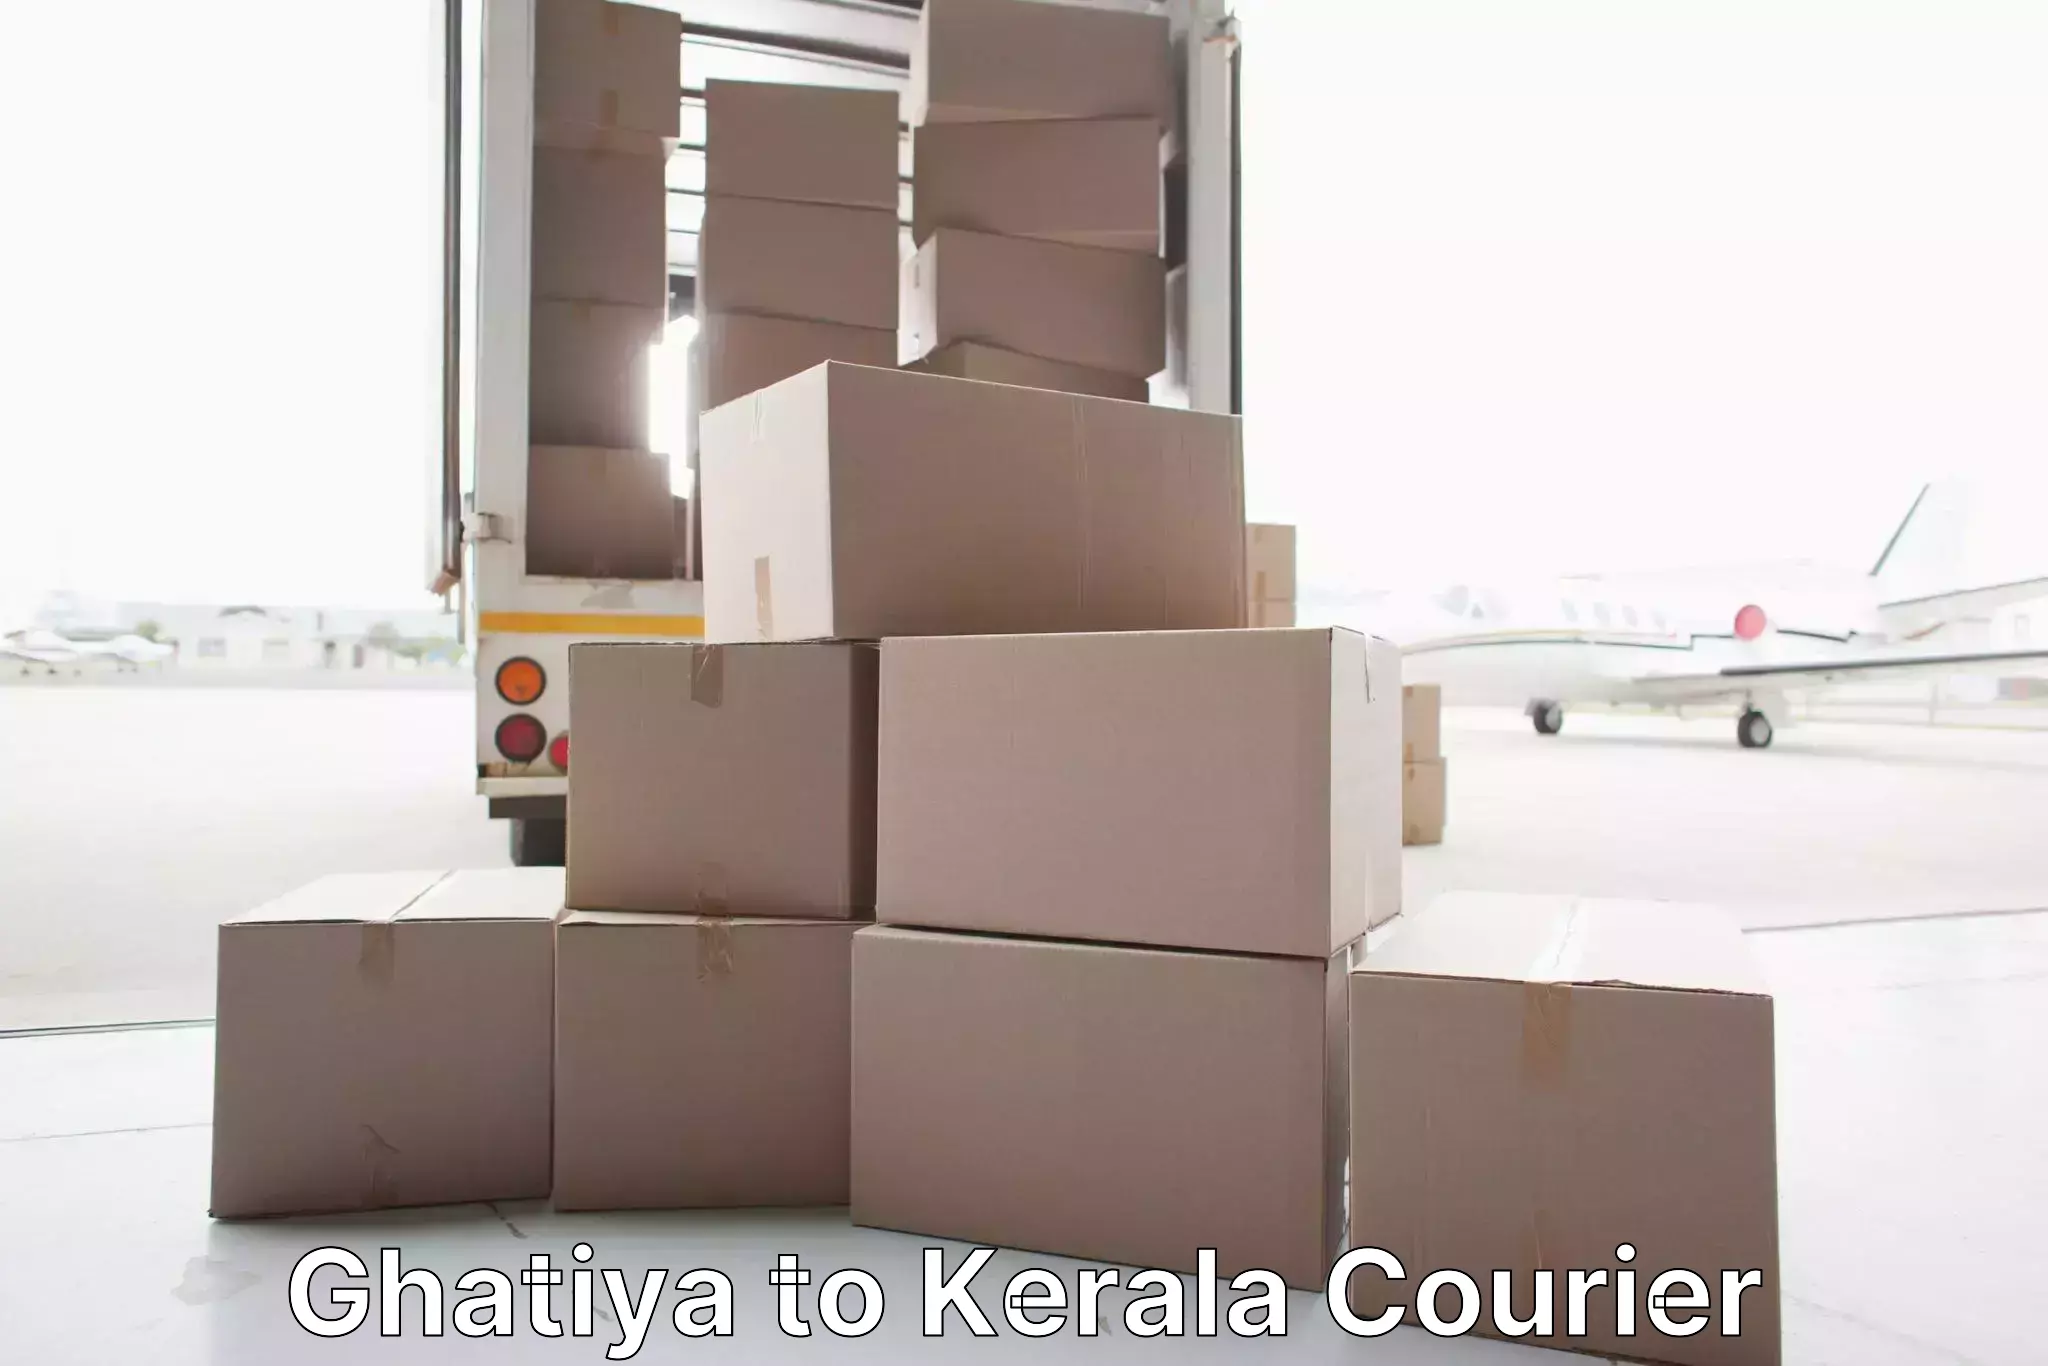 Furniture moving experts Ghatiya to Kodungallur